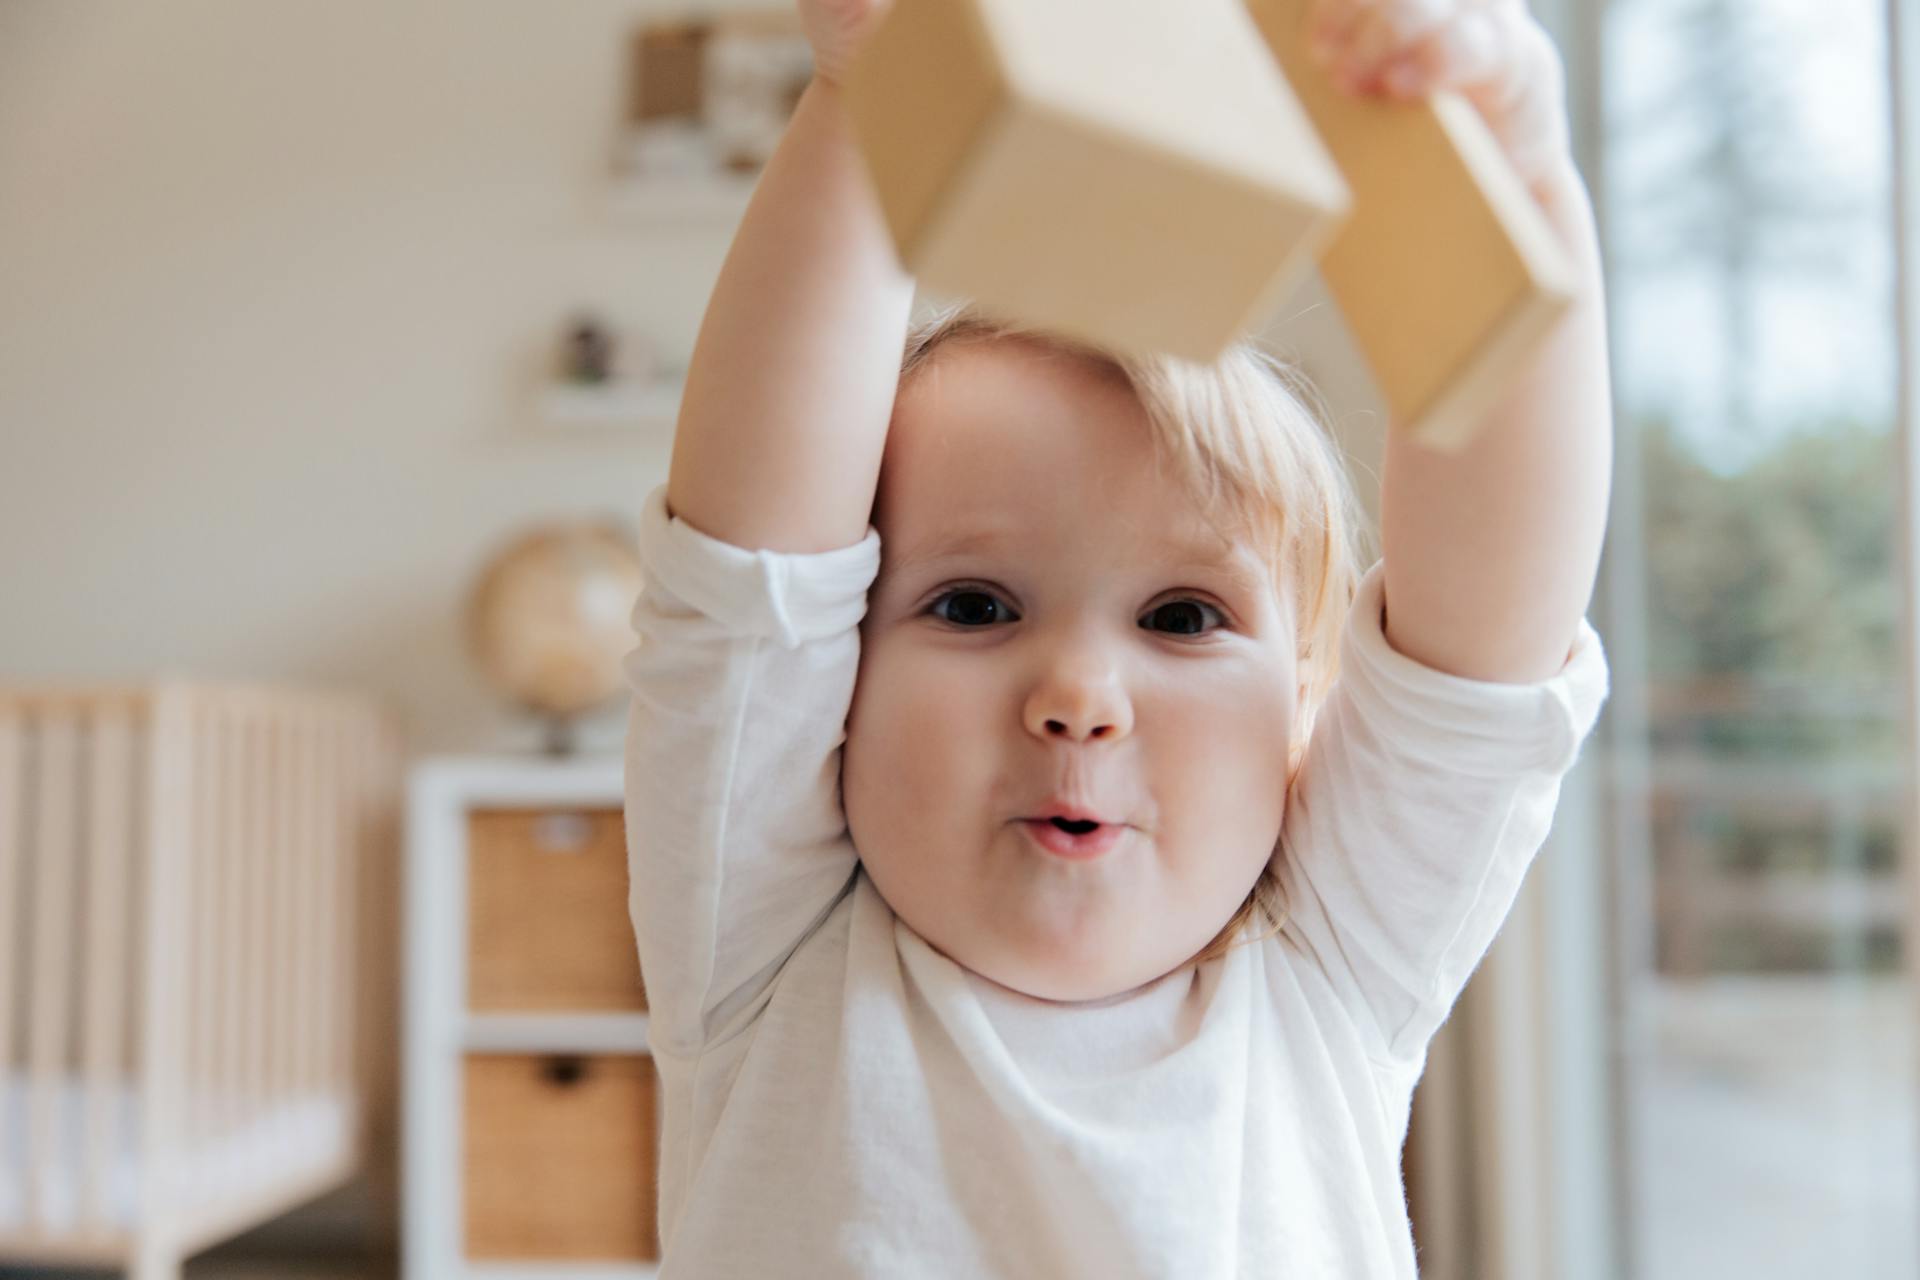 A little boy holding a wooden block | Source: Pexels